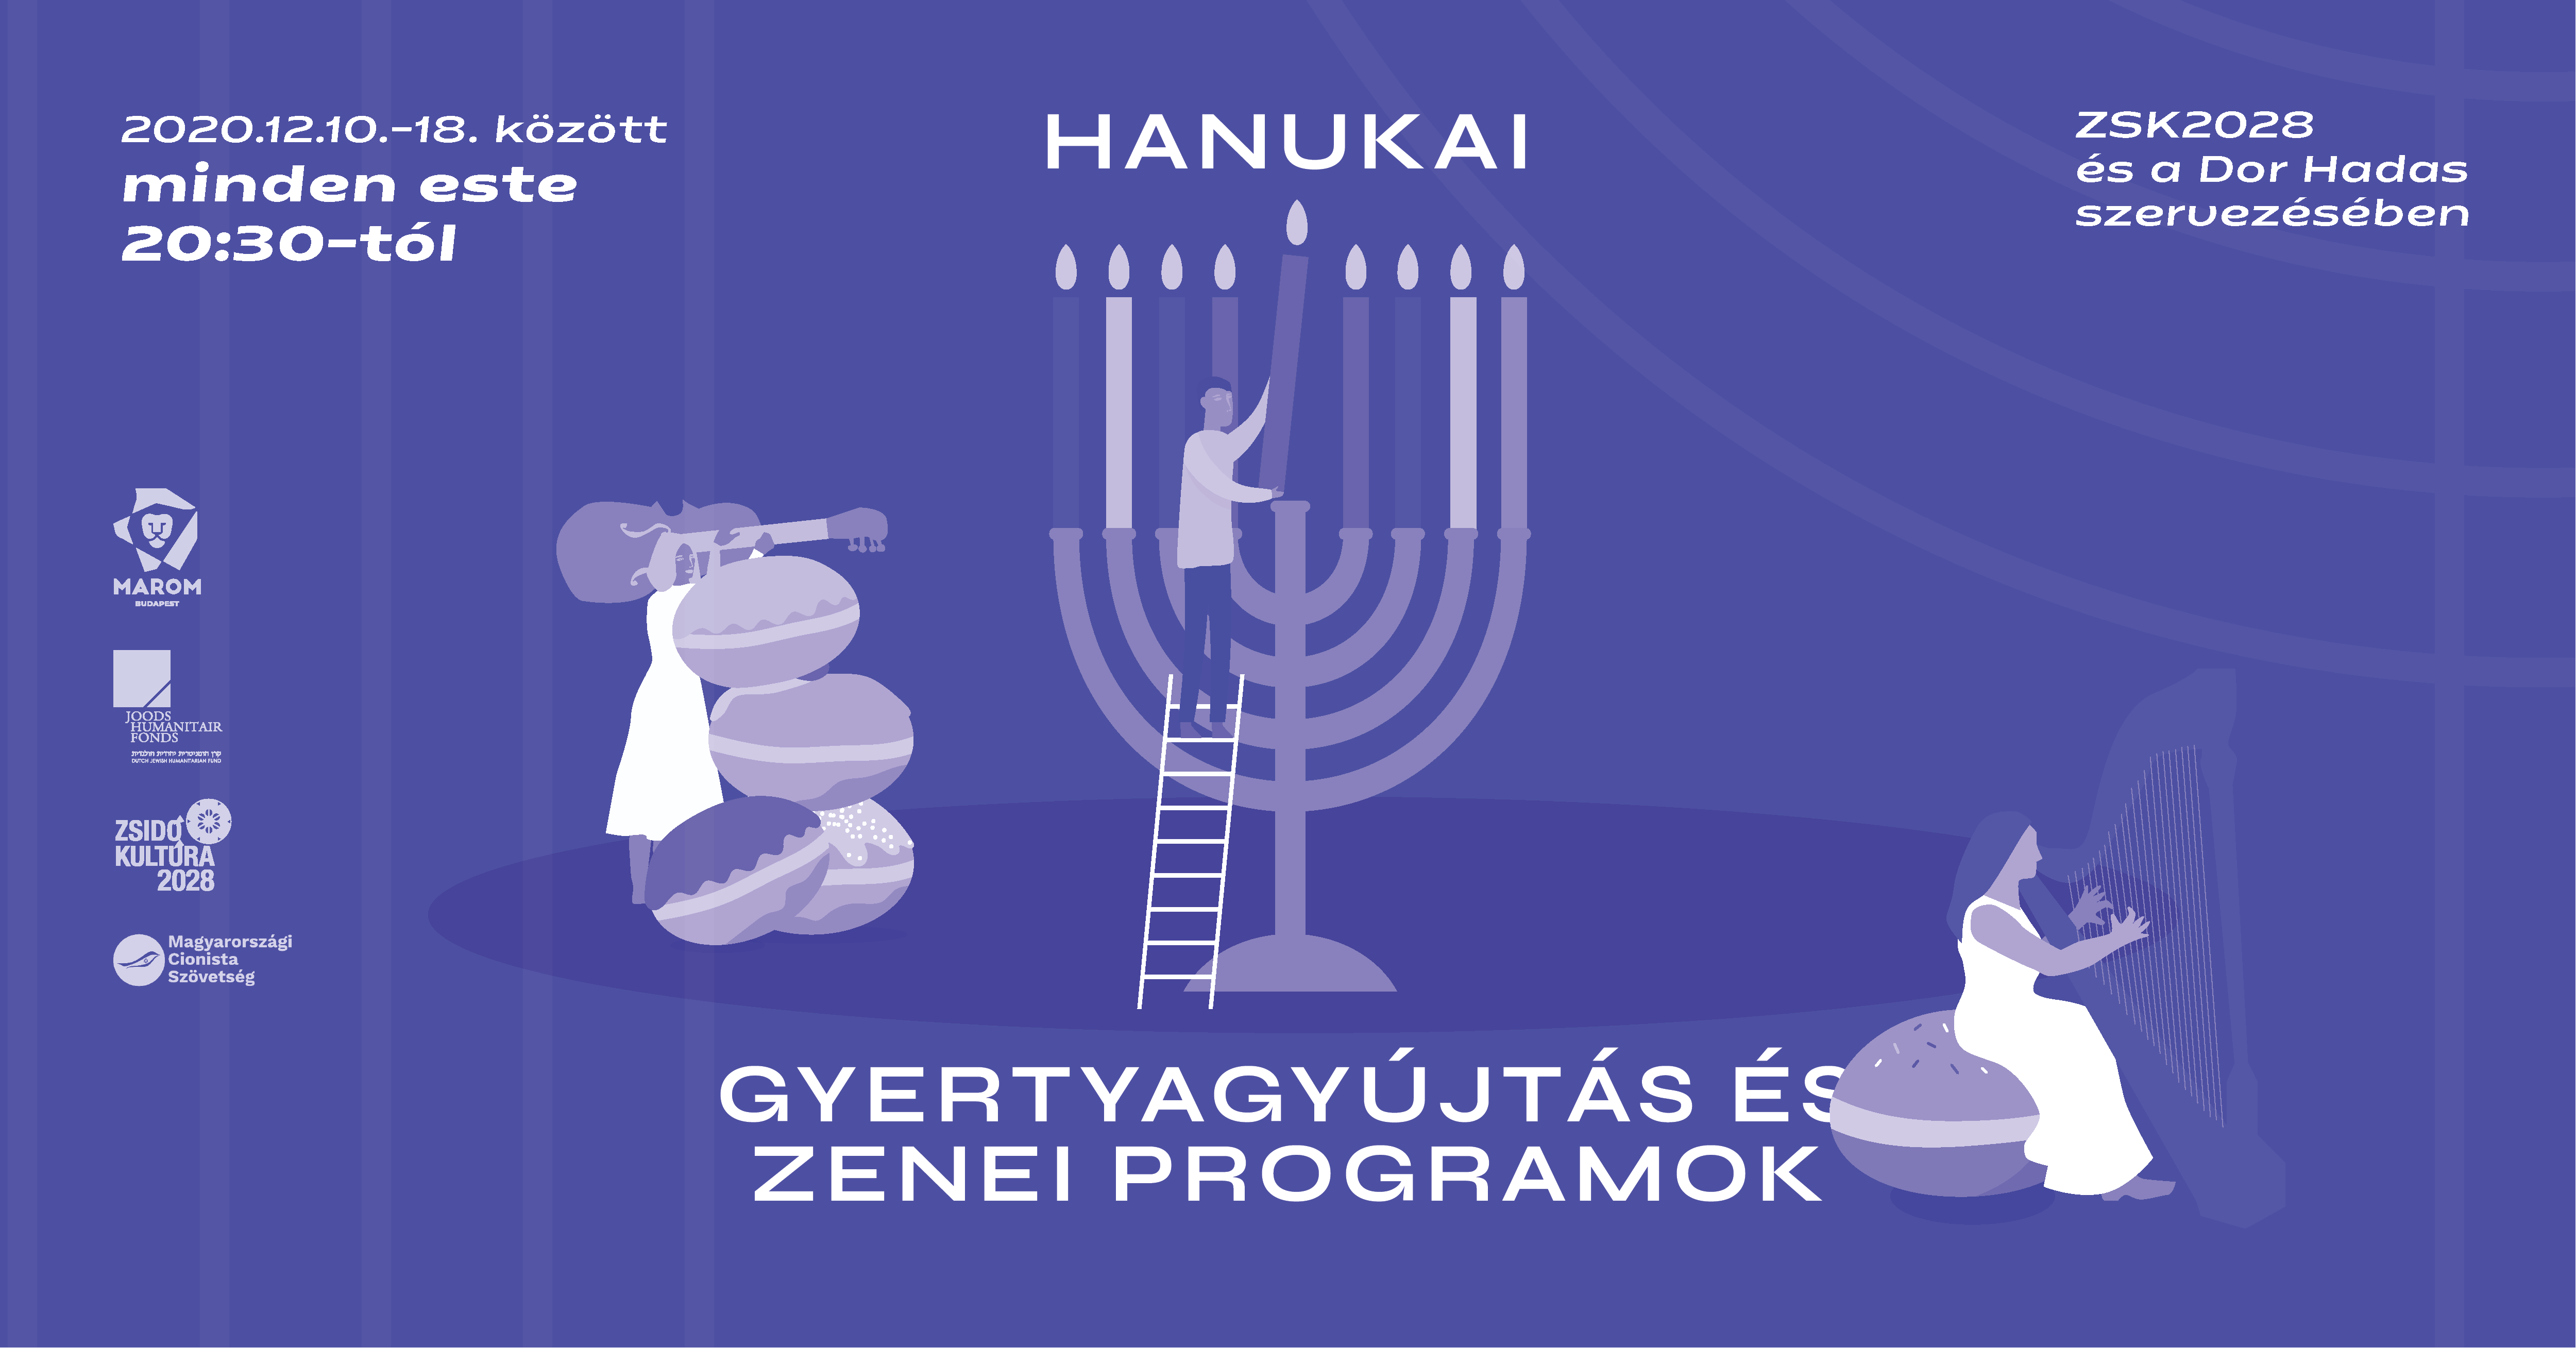 Online Hanukkah Festival